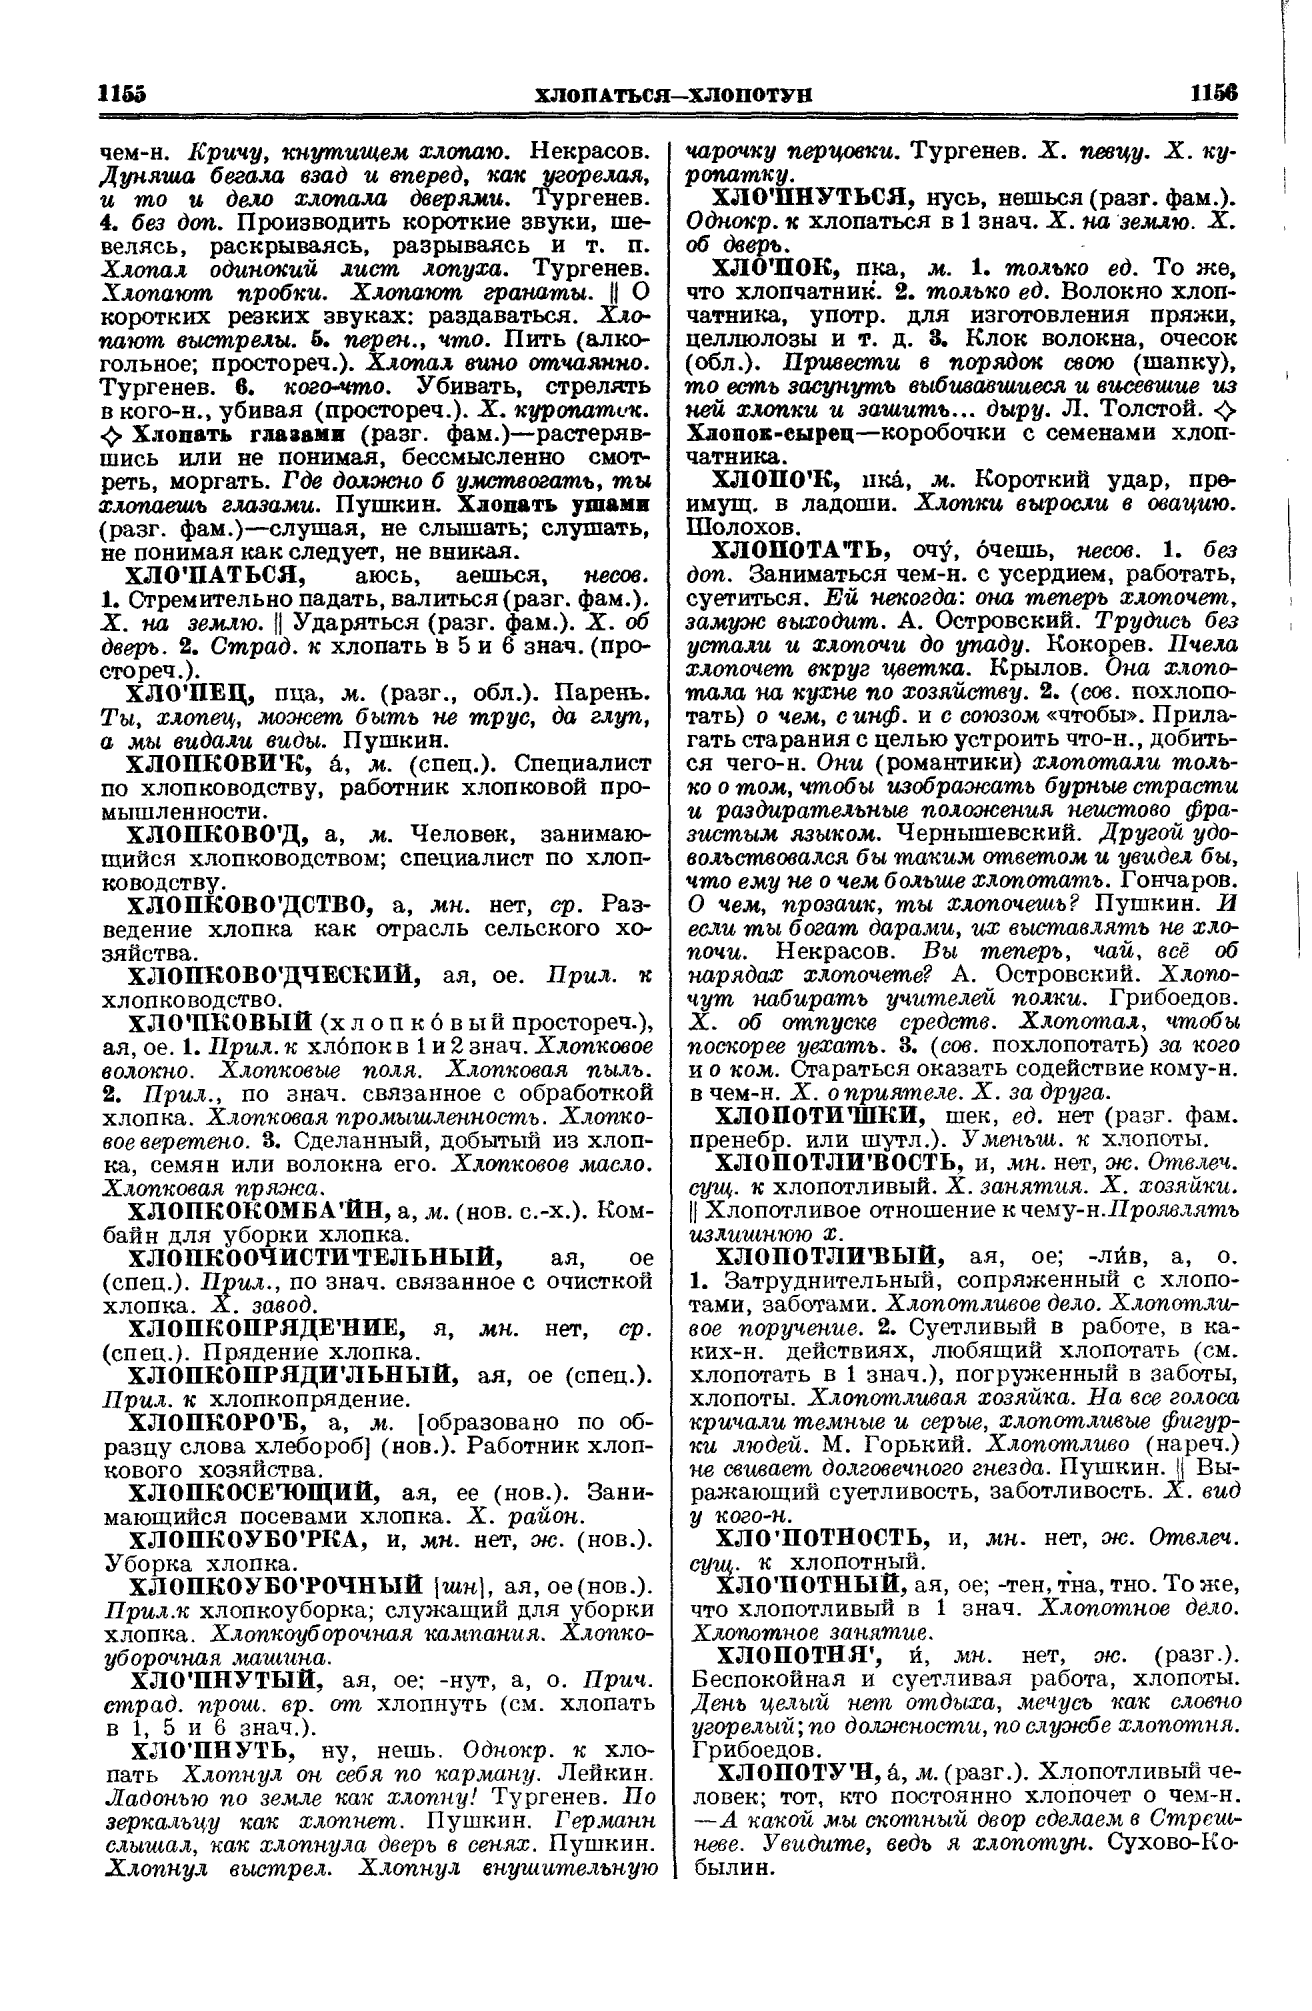 Фотокопия pdf / скан страницы 578 толкового словаря Ушакова (том 1)